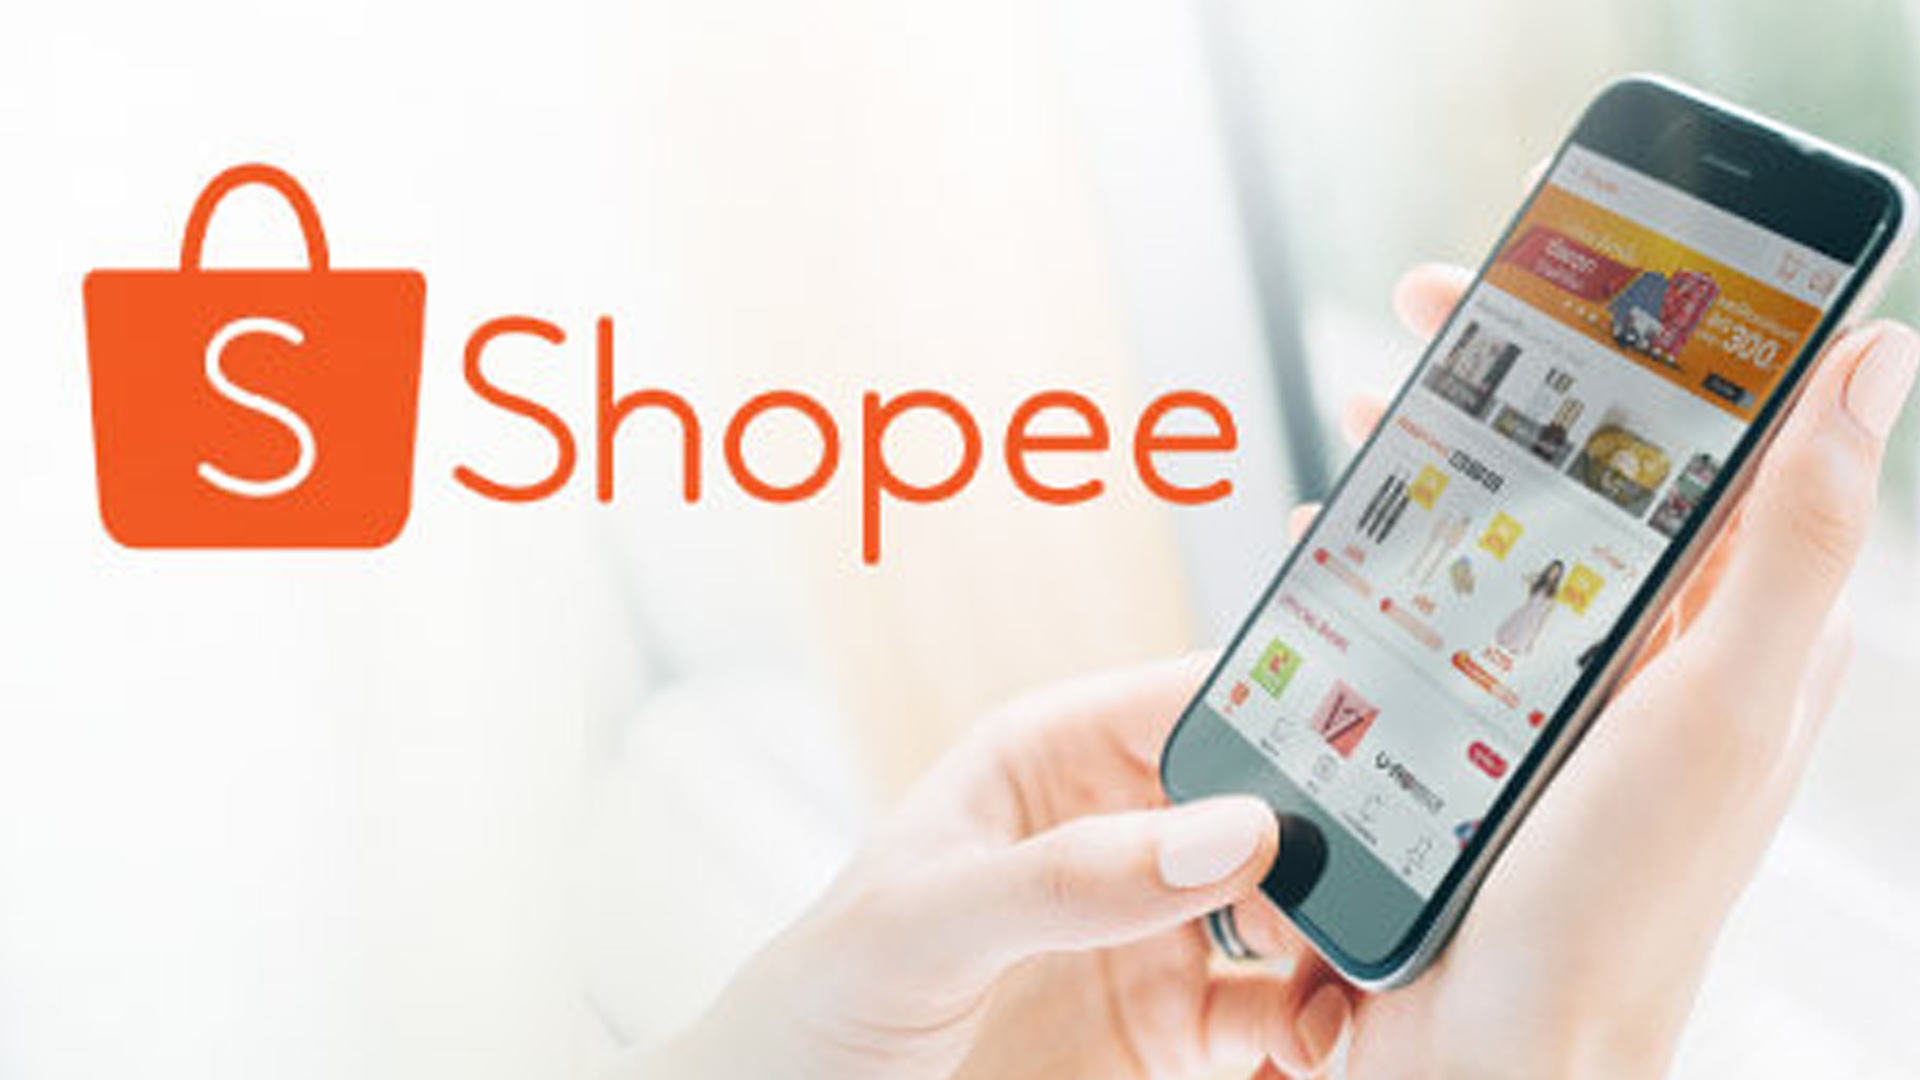 7 kinh nghiệm bán hàng trên Shopee hiệu quả cho các chủ shop online